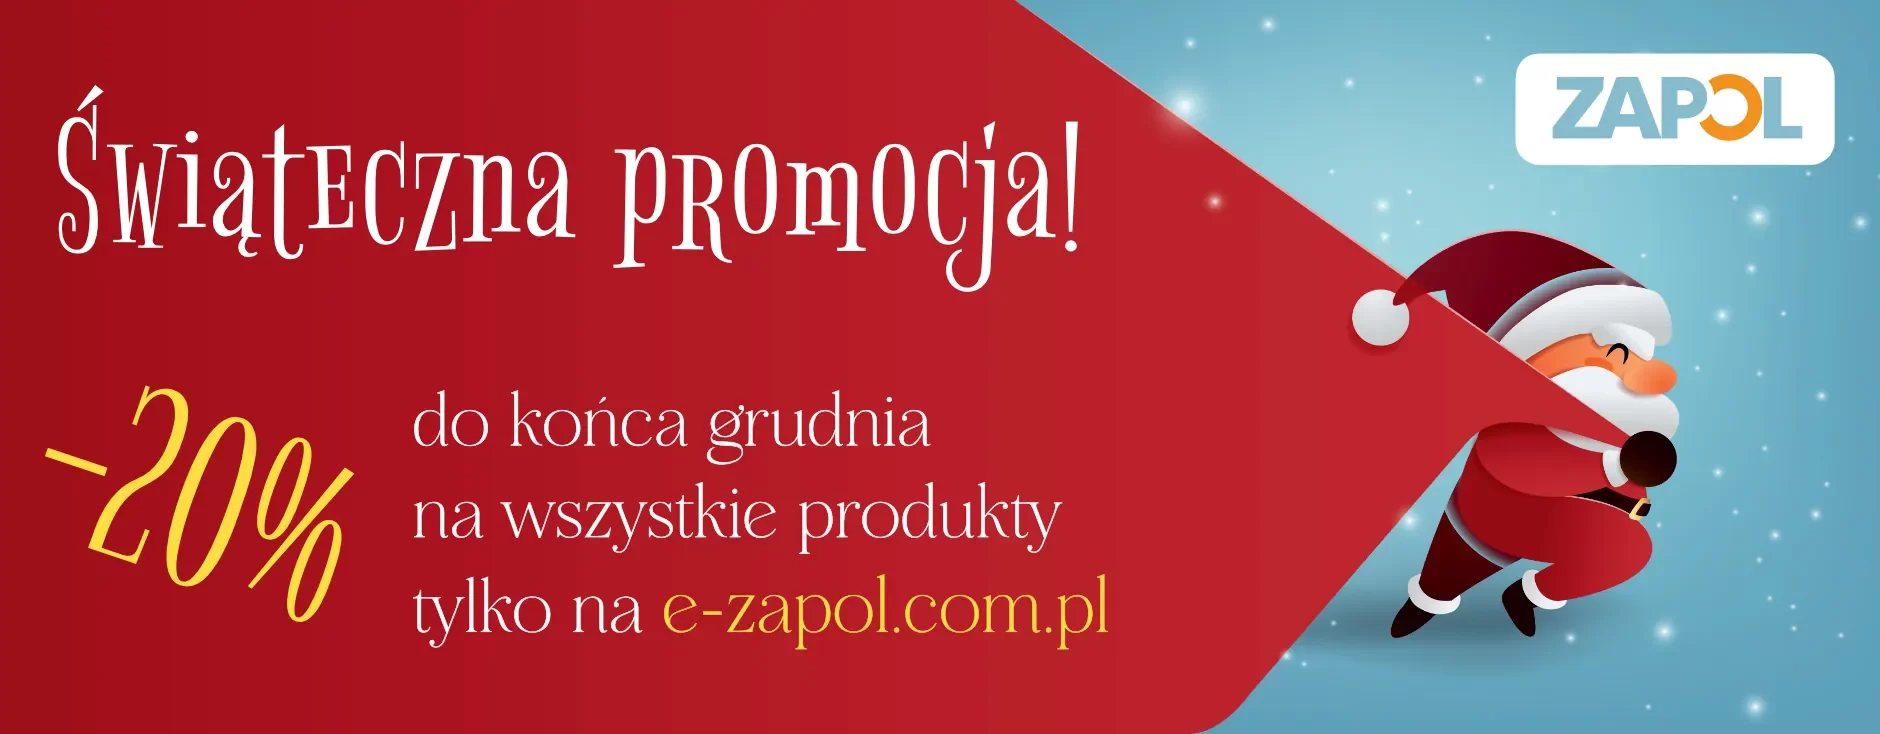 Świąteczna promocja -20% na wszystkie produkty na stronie e-zapol.com.p